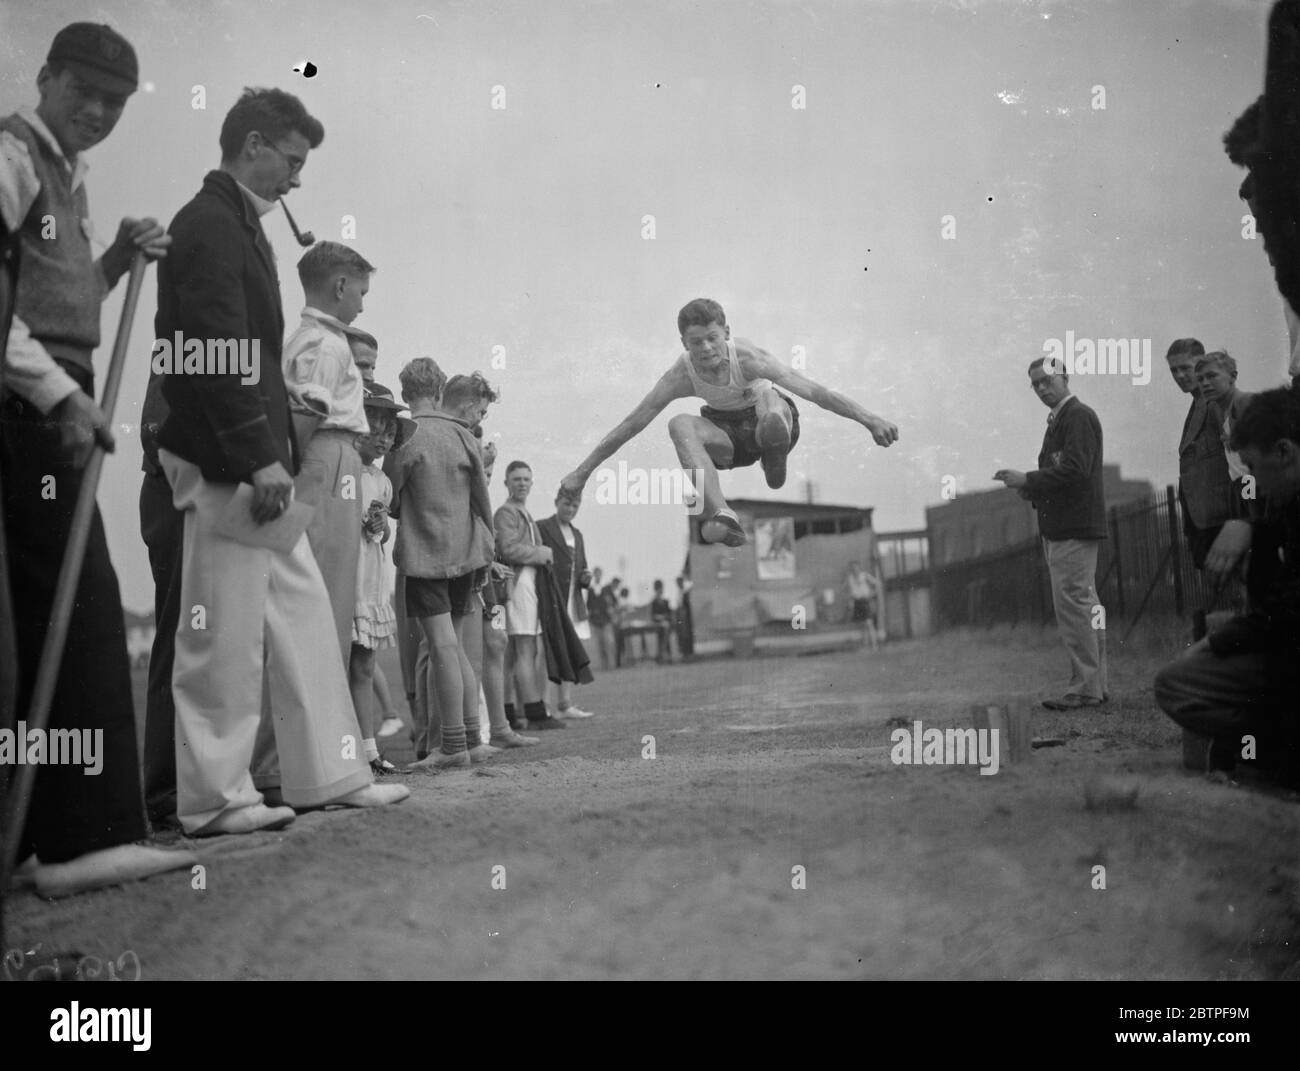 Dartford técnica de deportes universitarios. Atrapado en el aire durante el salto largo. 1938 Foto de stock